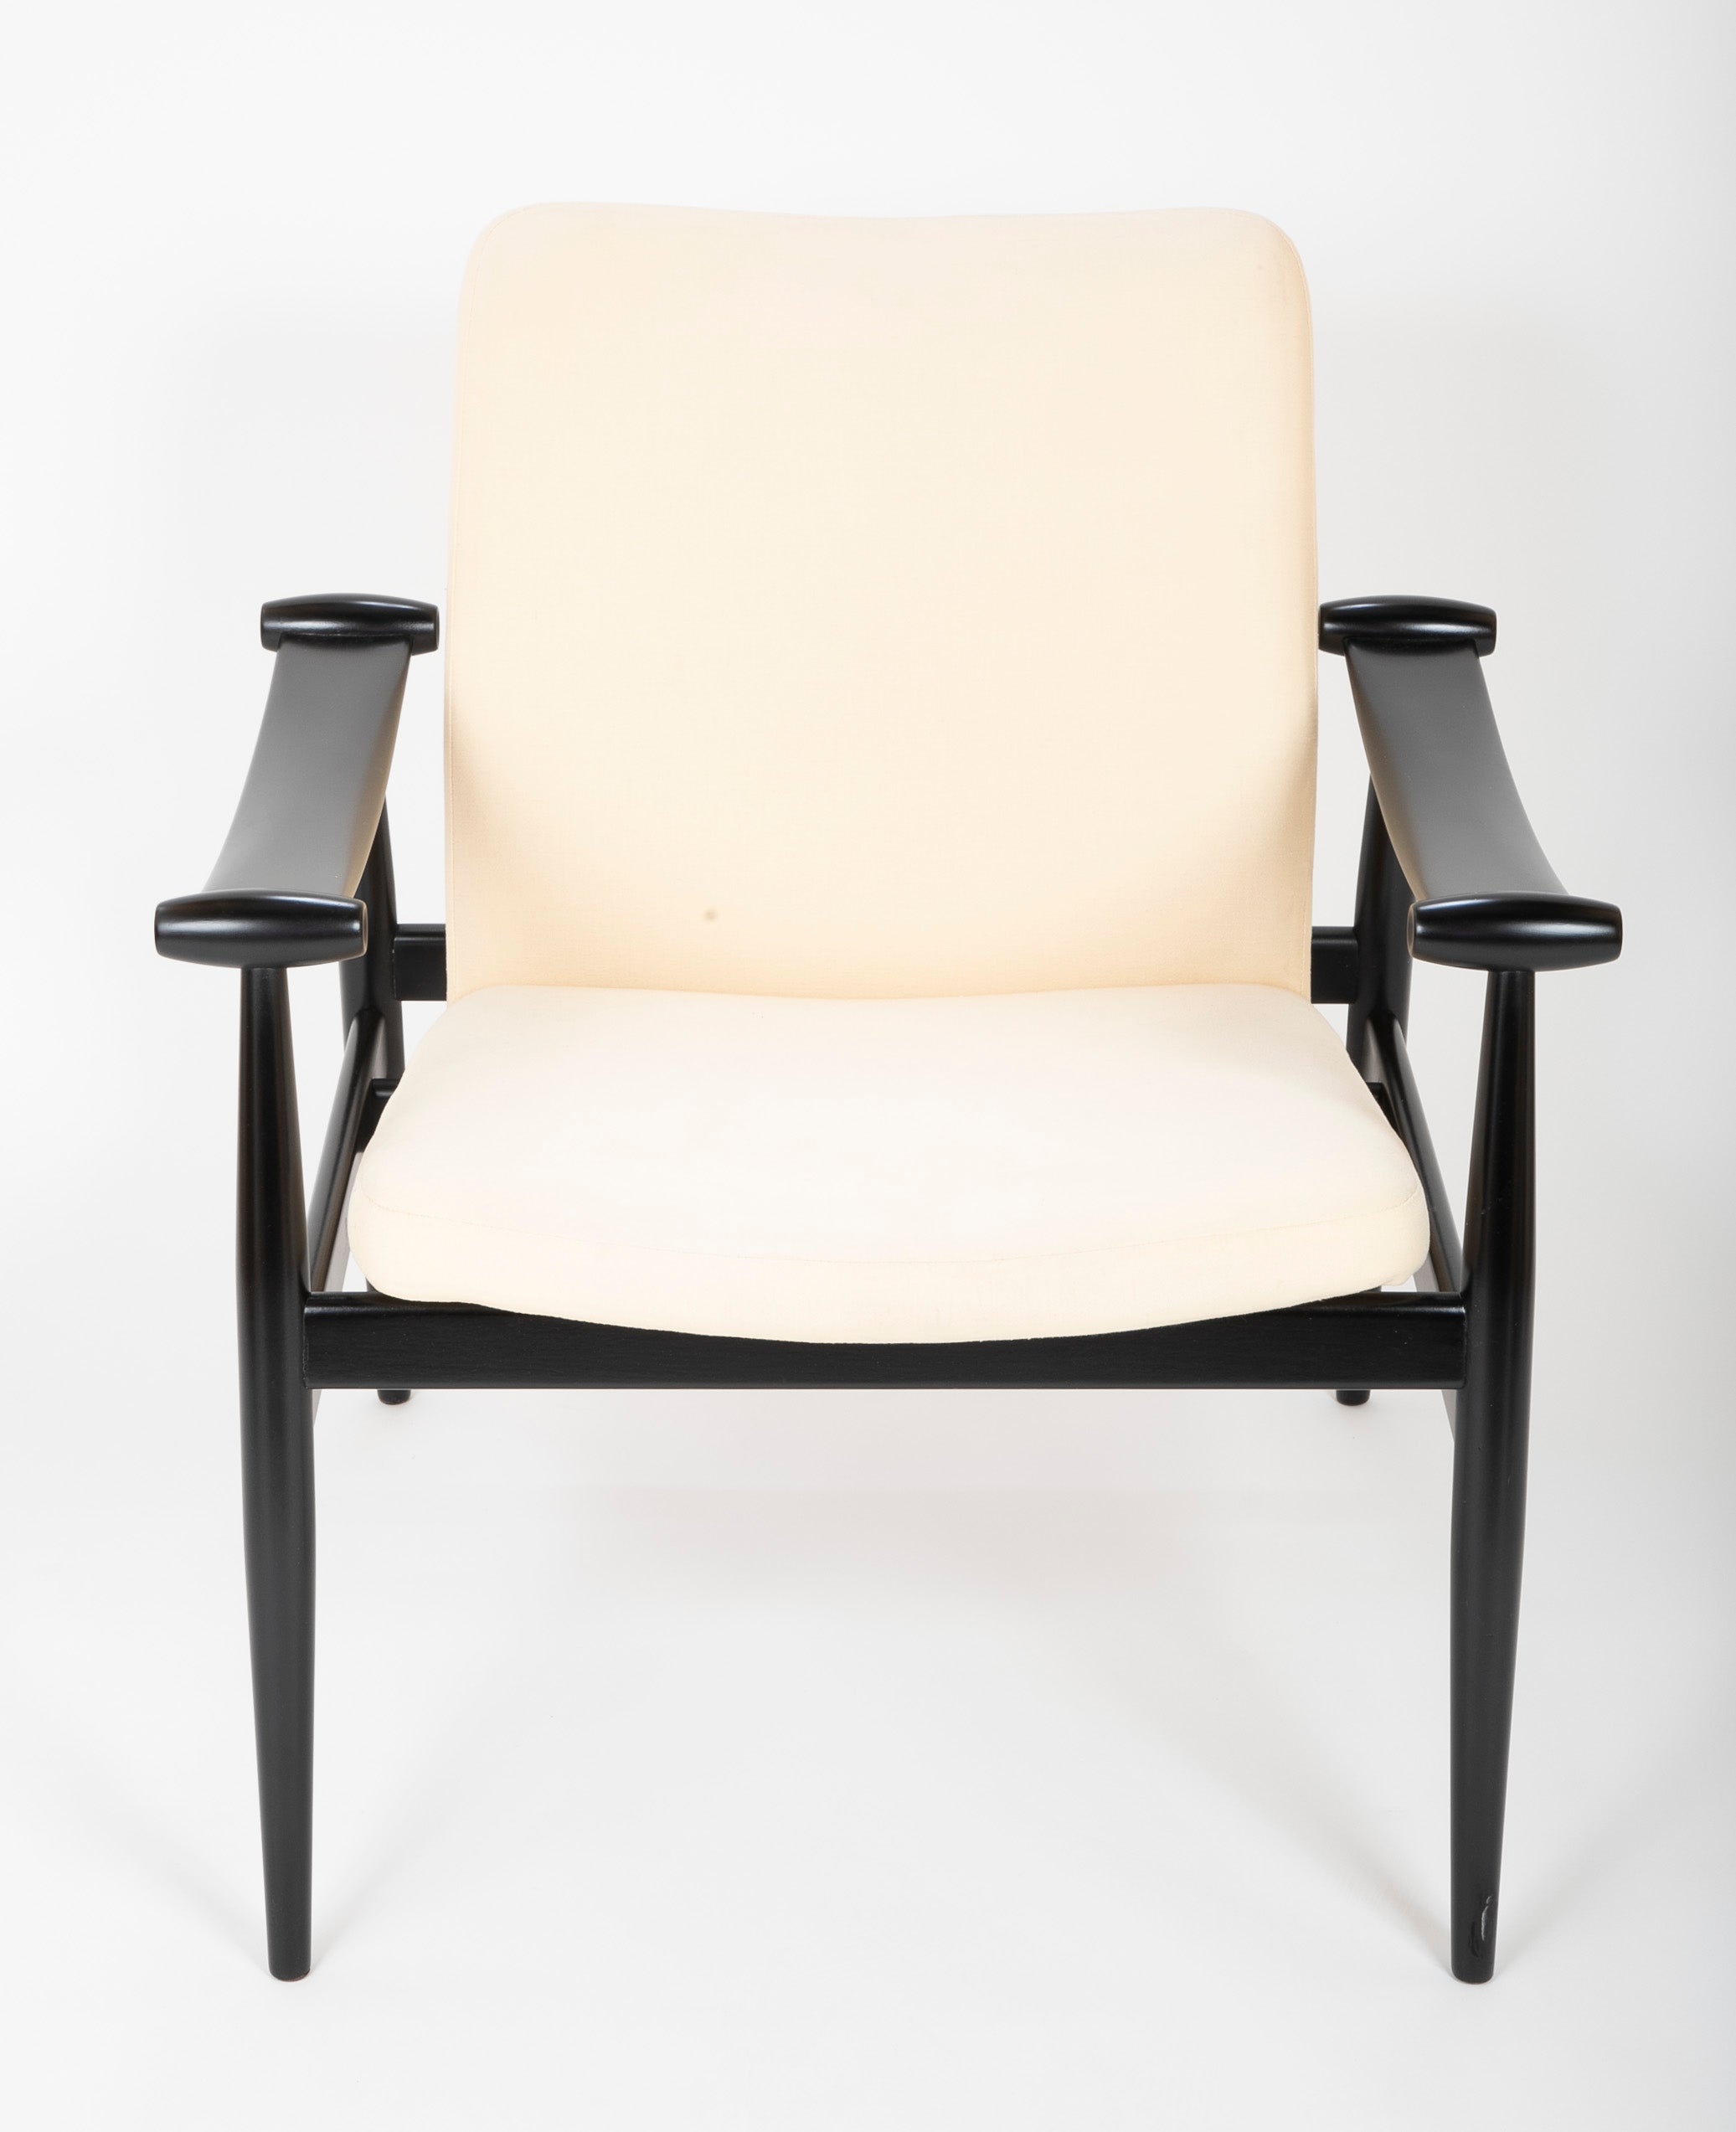 Spade Chair Designed by Finn Juhl